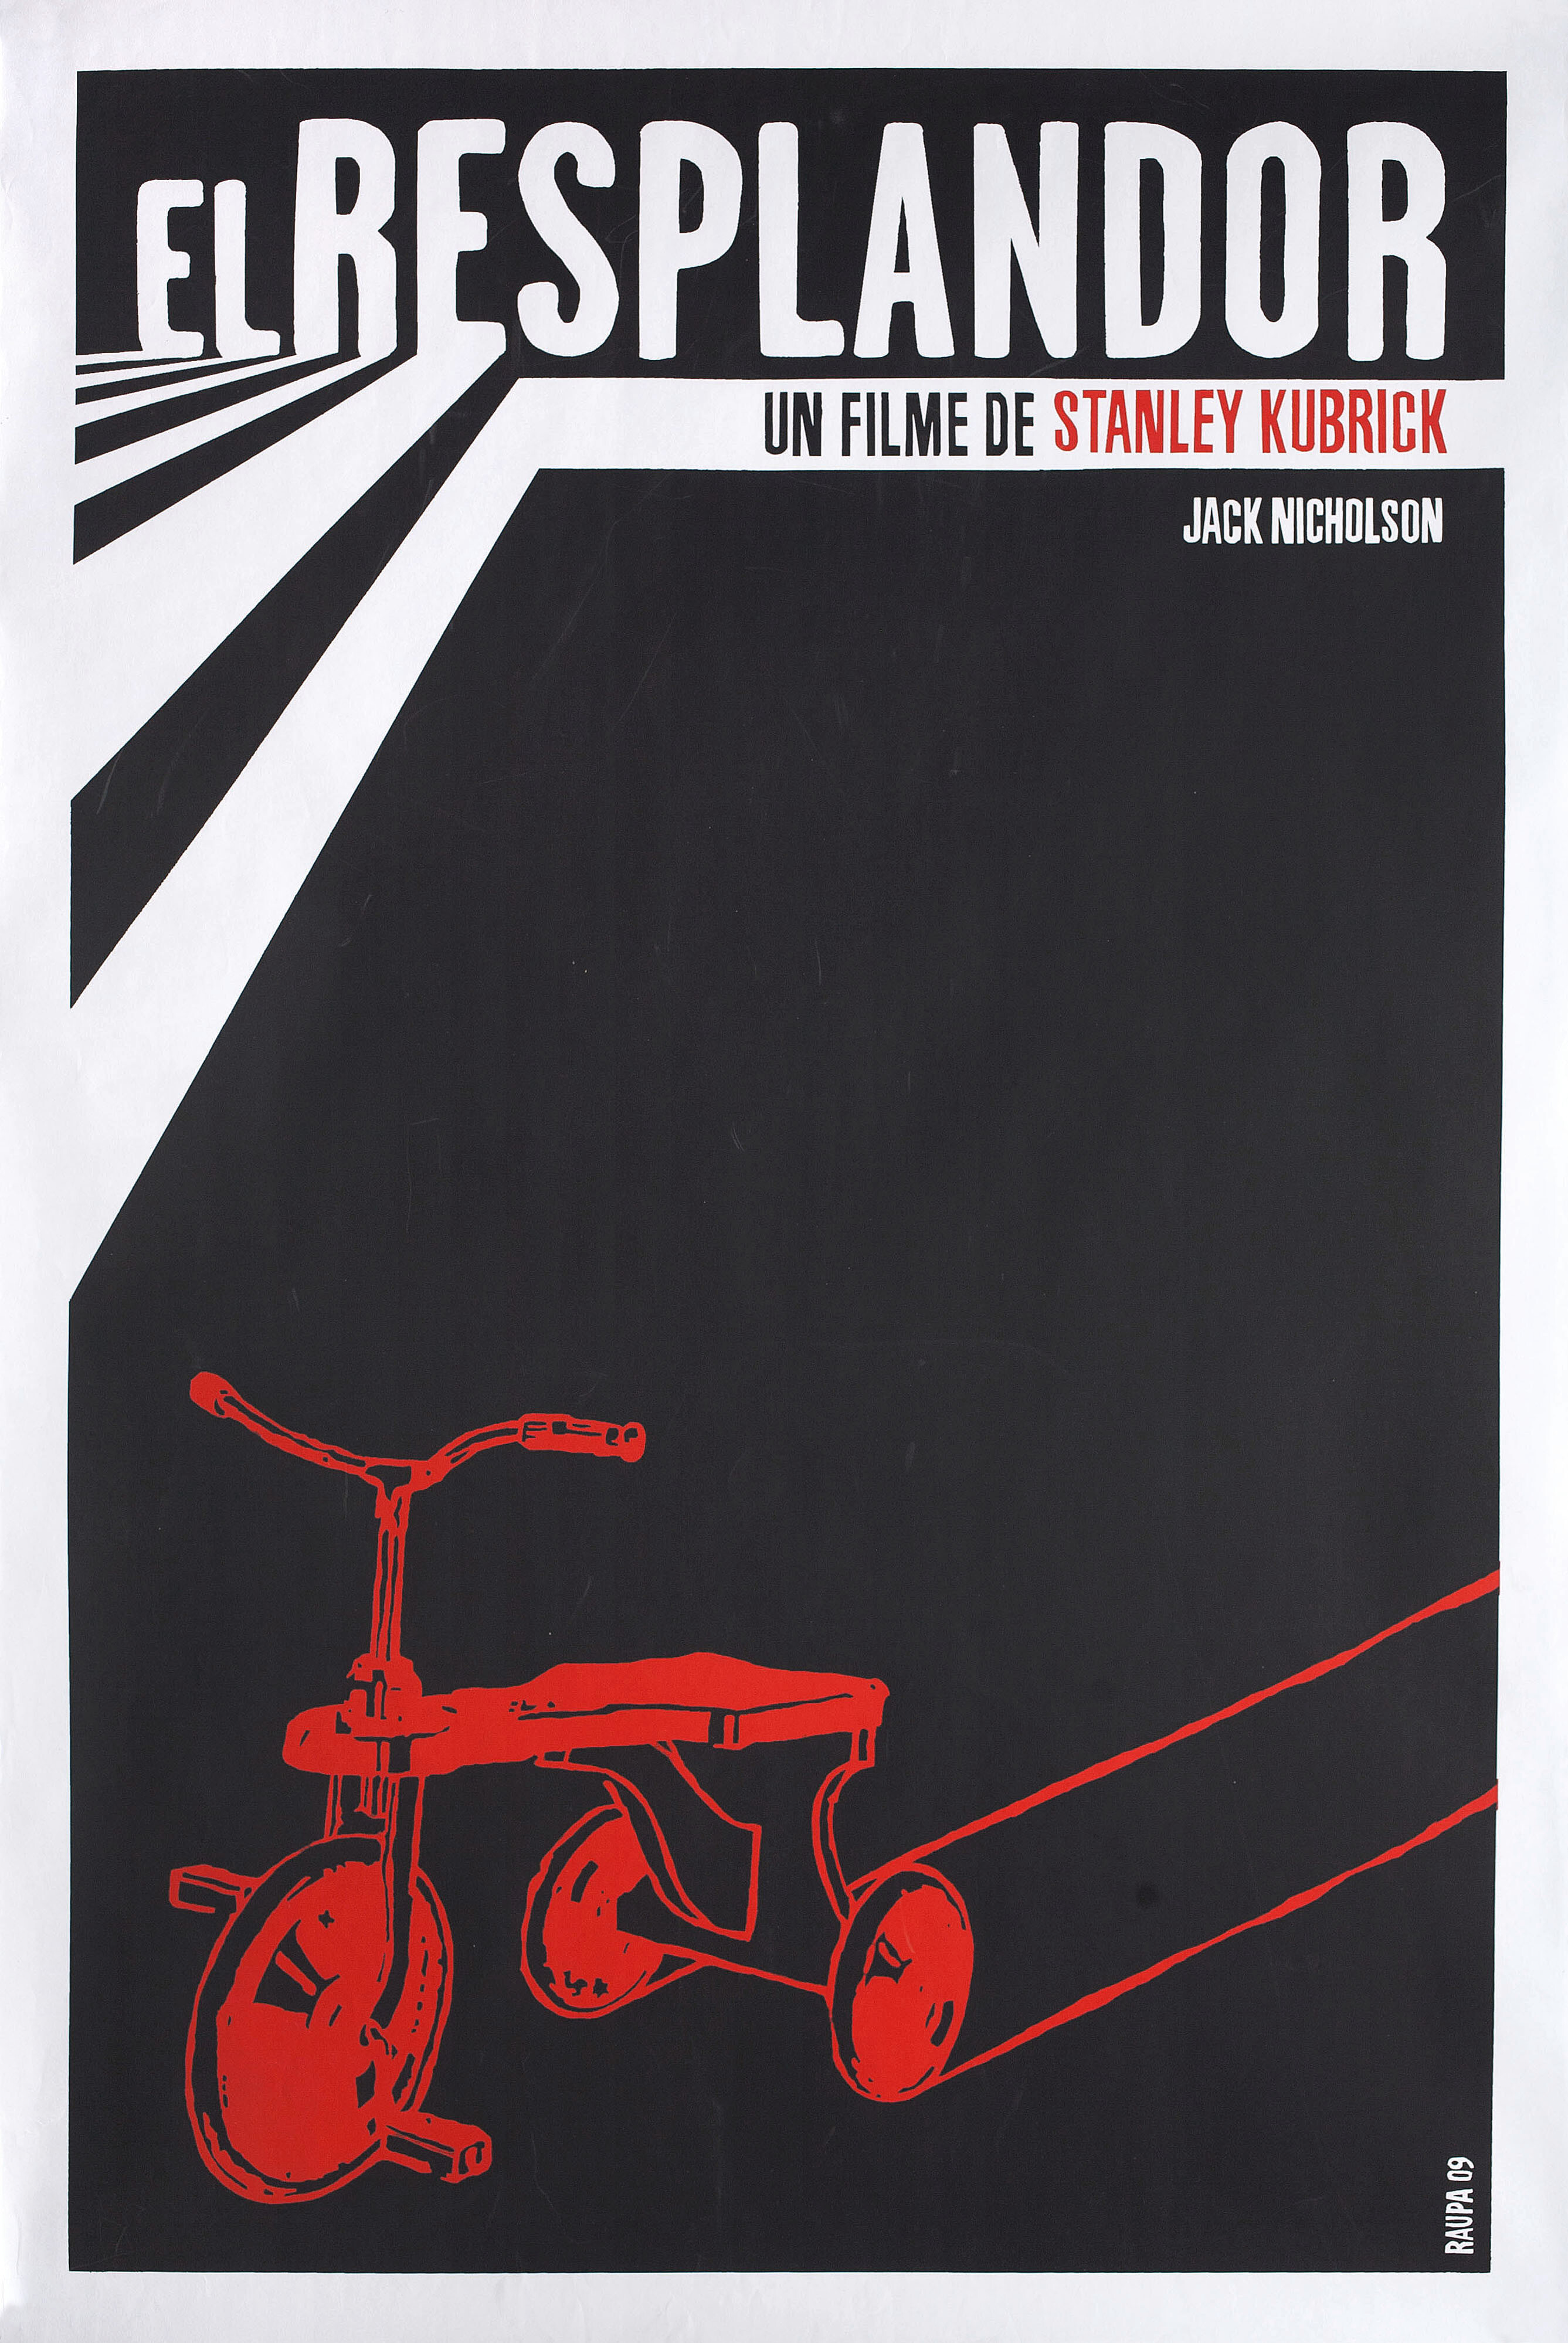 Сияние (The Shining, 1980), режиссёр Стэнли Кубрик, кубинский плакат к фильму, 2009 год, автор Раупа